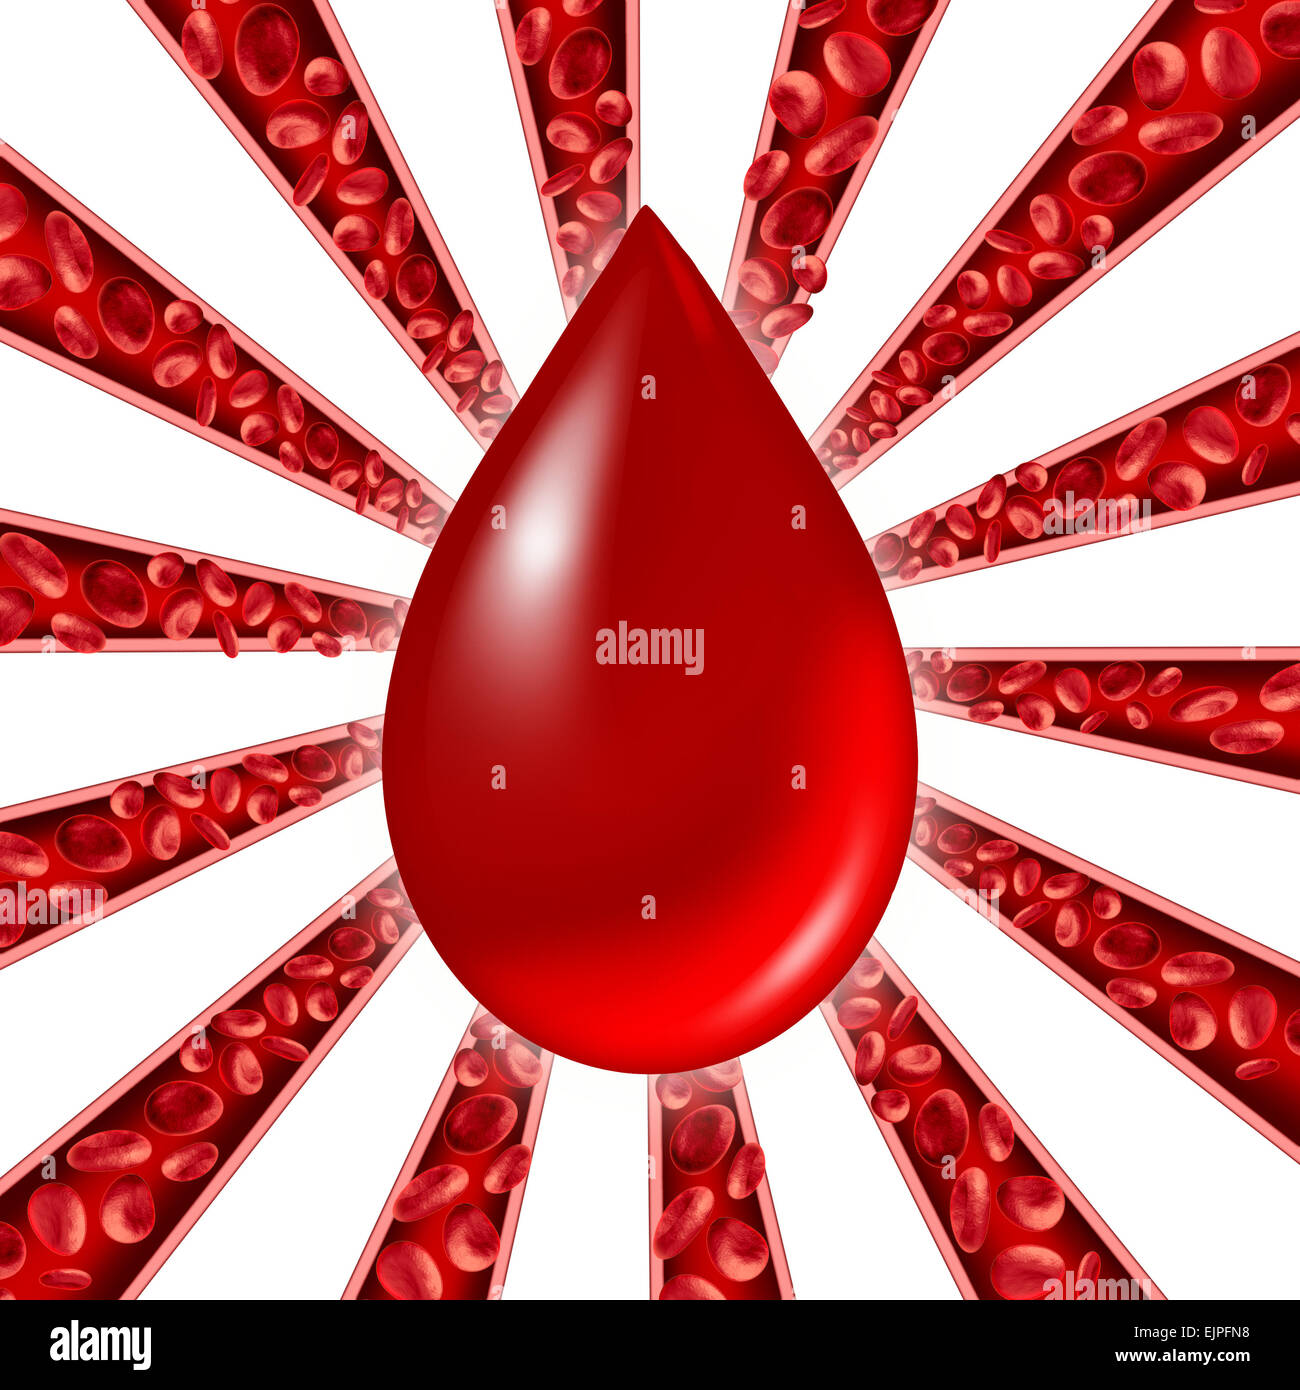 En tant que symbole du don de sang Cellules rouge qui coule à travers les veines et les droits de l'appareil circulatoire avec un groupe d'artères sous forme d'un modèle d'Étoile représentant un symbole de la santé cardiovasculaire. Banque D'Images